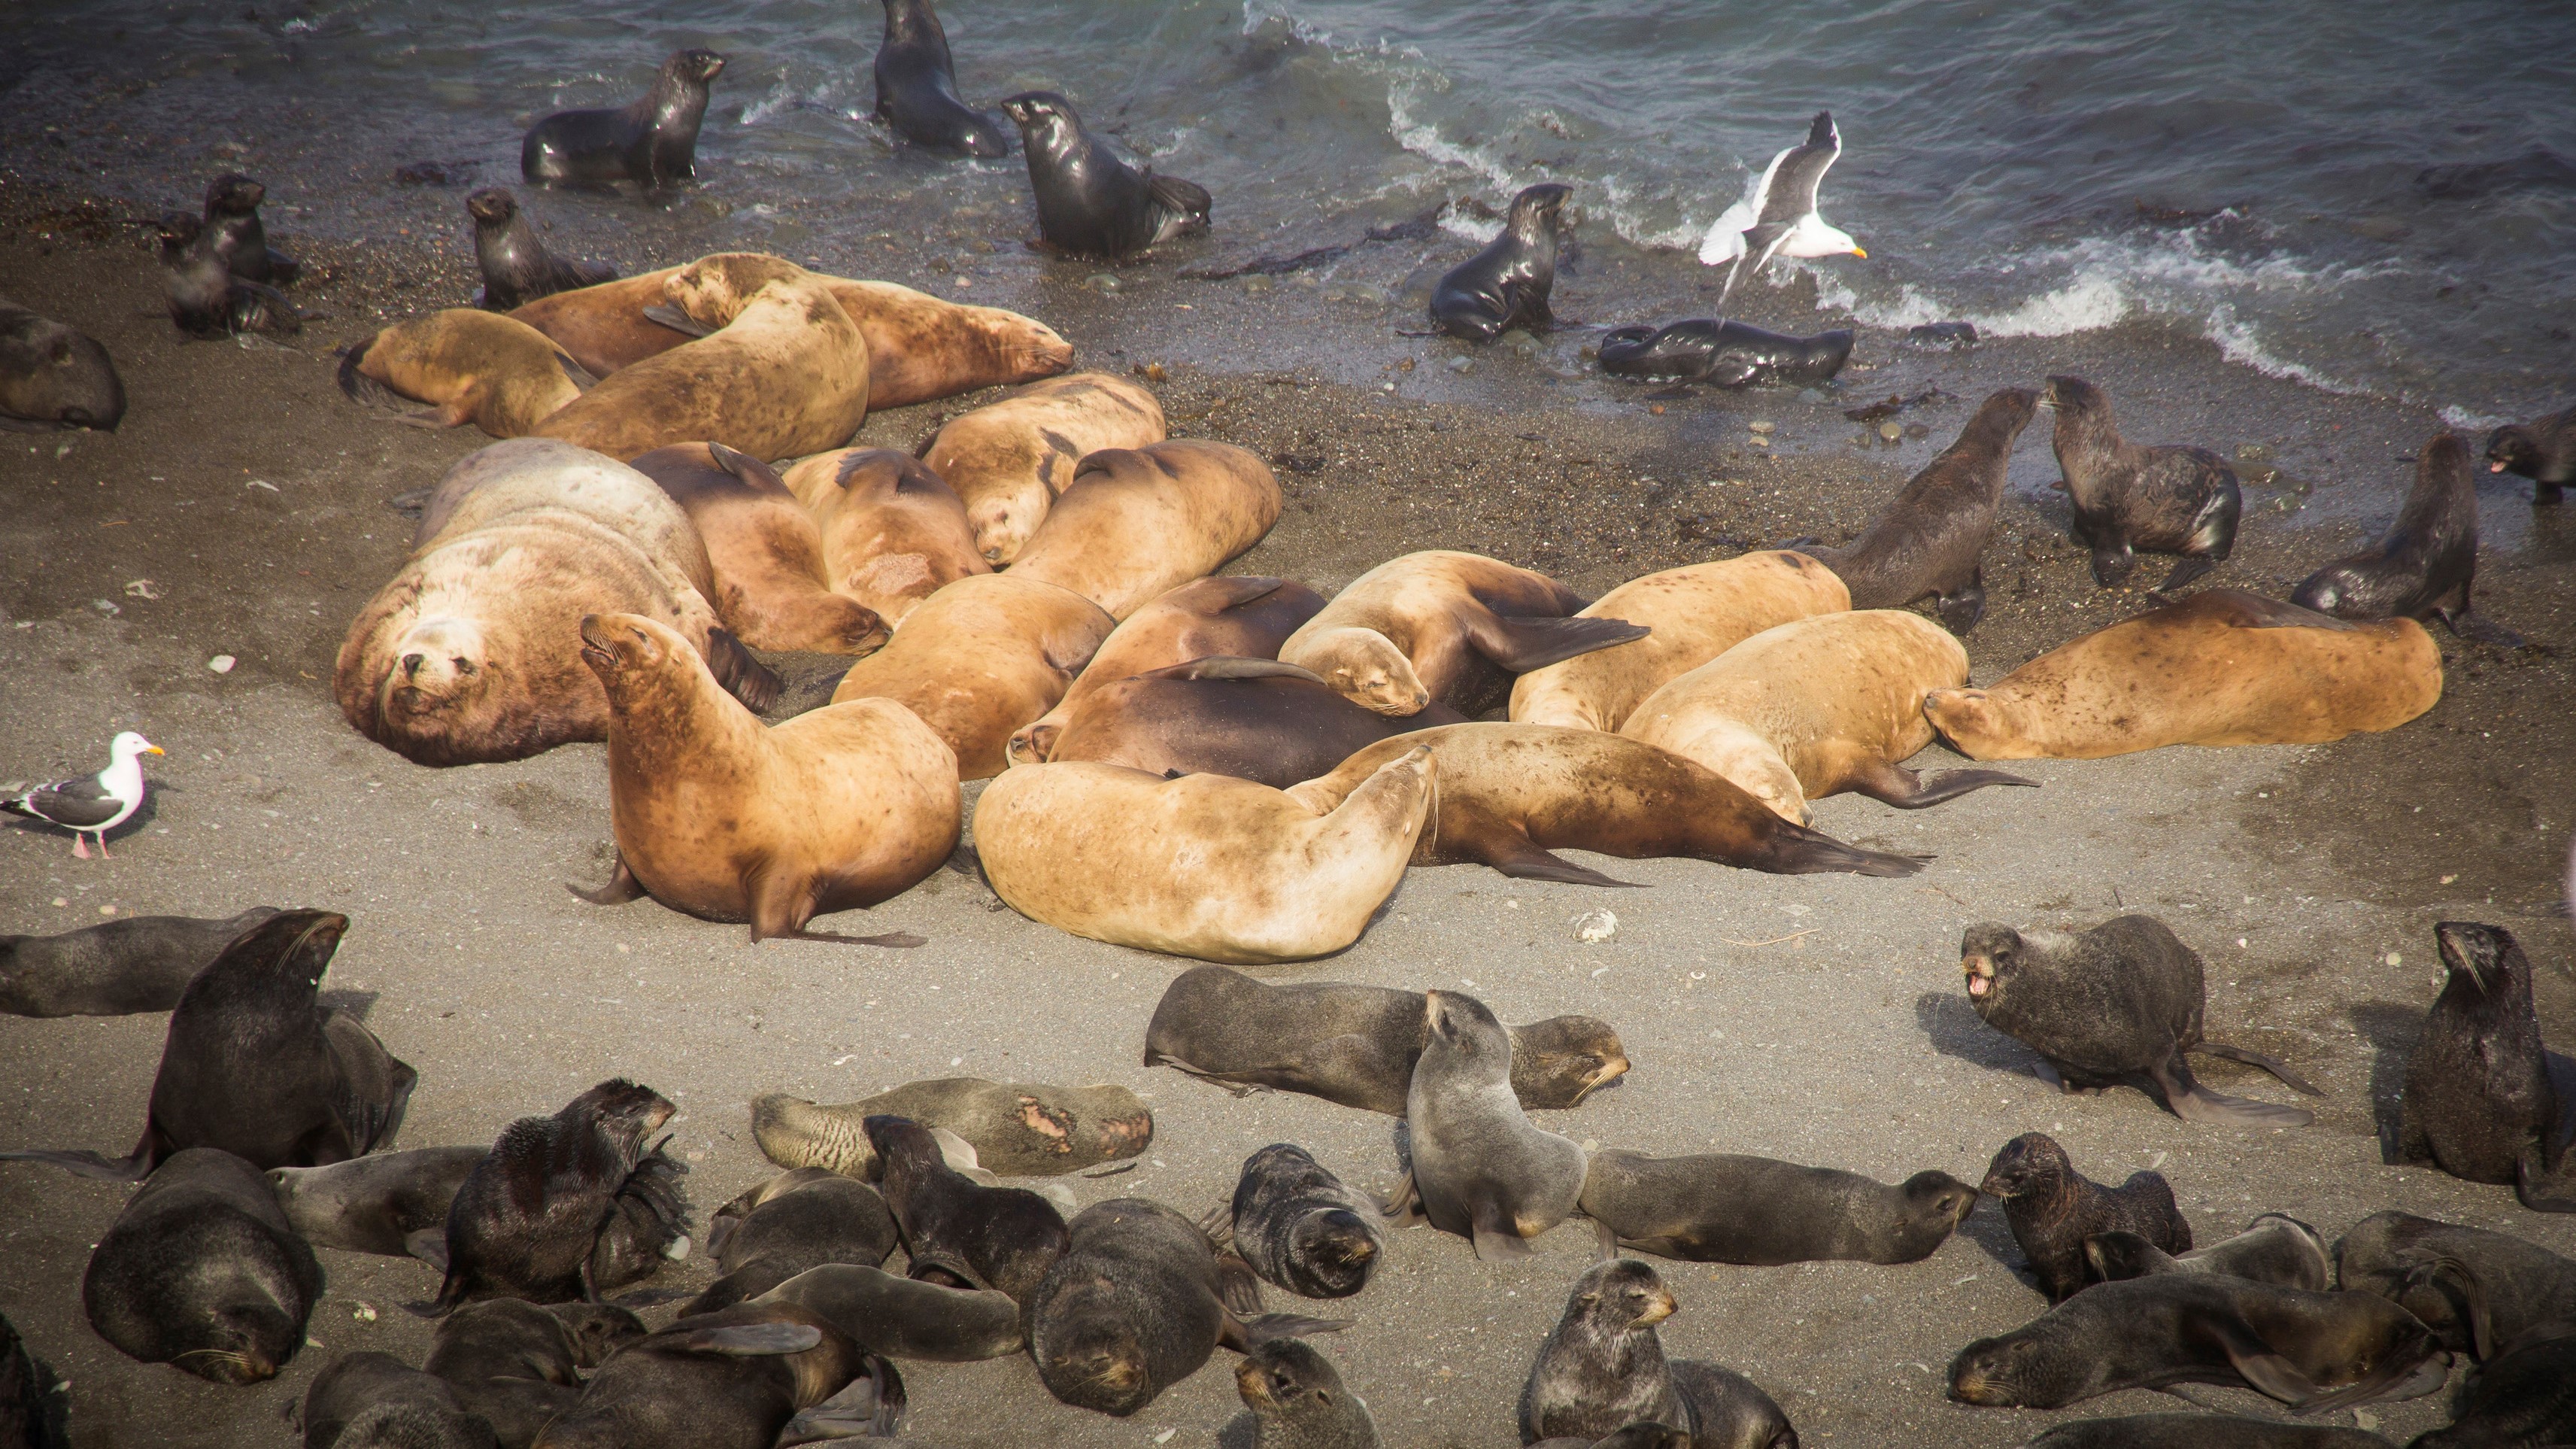 Anjing laut dewasa dan anak anjing laut tergeletak di pantai di sebuah pulau.